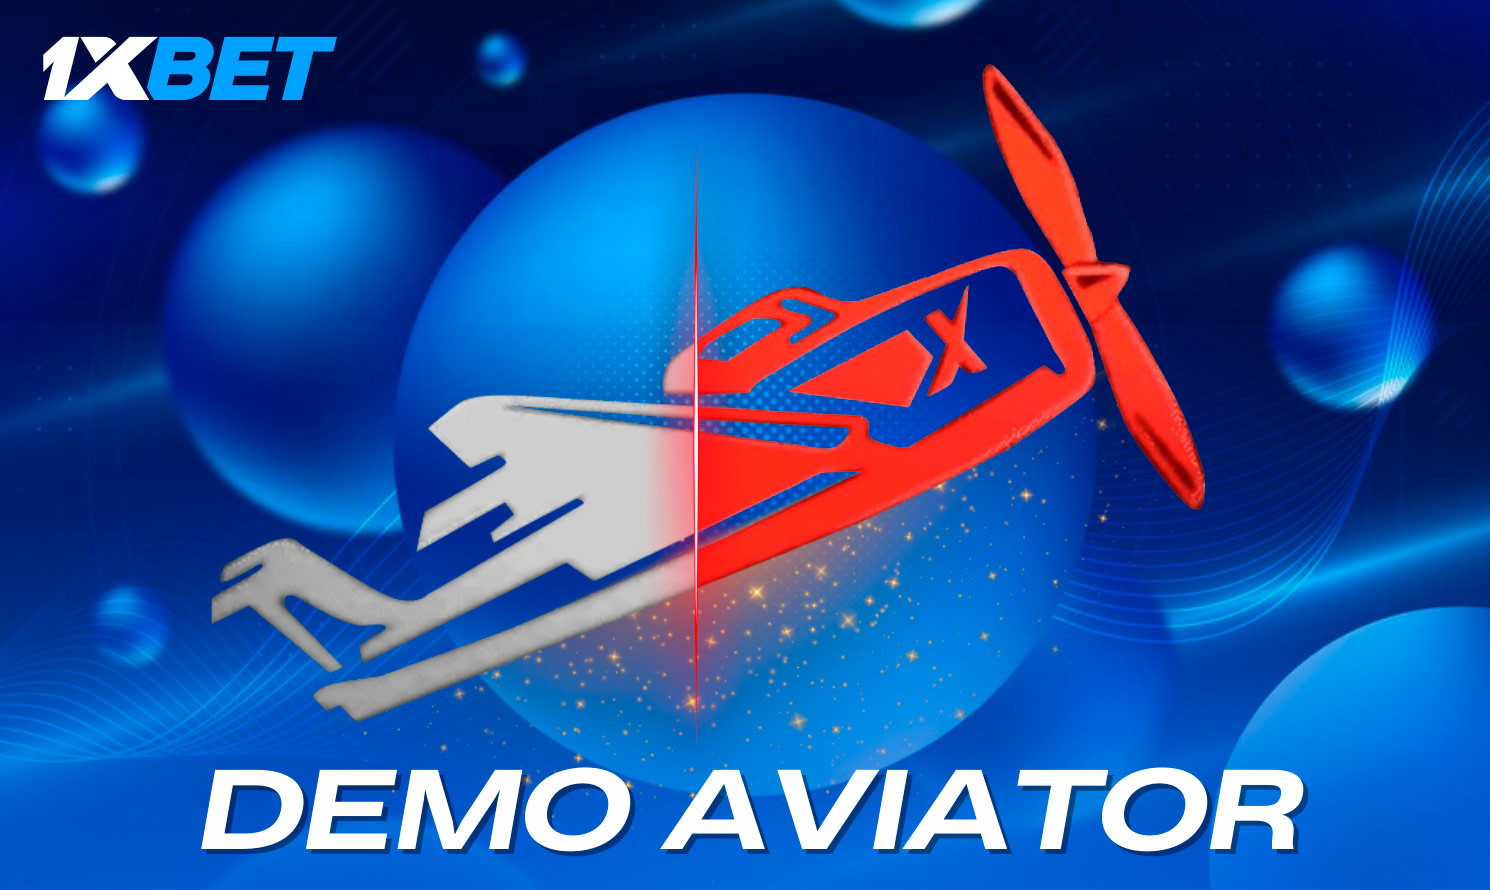 O modo de demonstração Aviator está disponível para todos os jogadores da plataforma